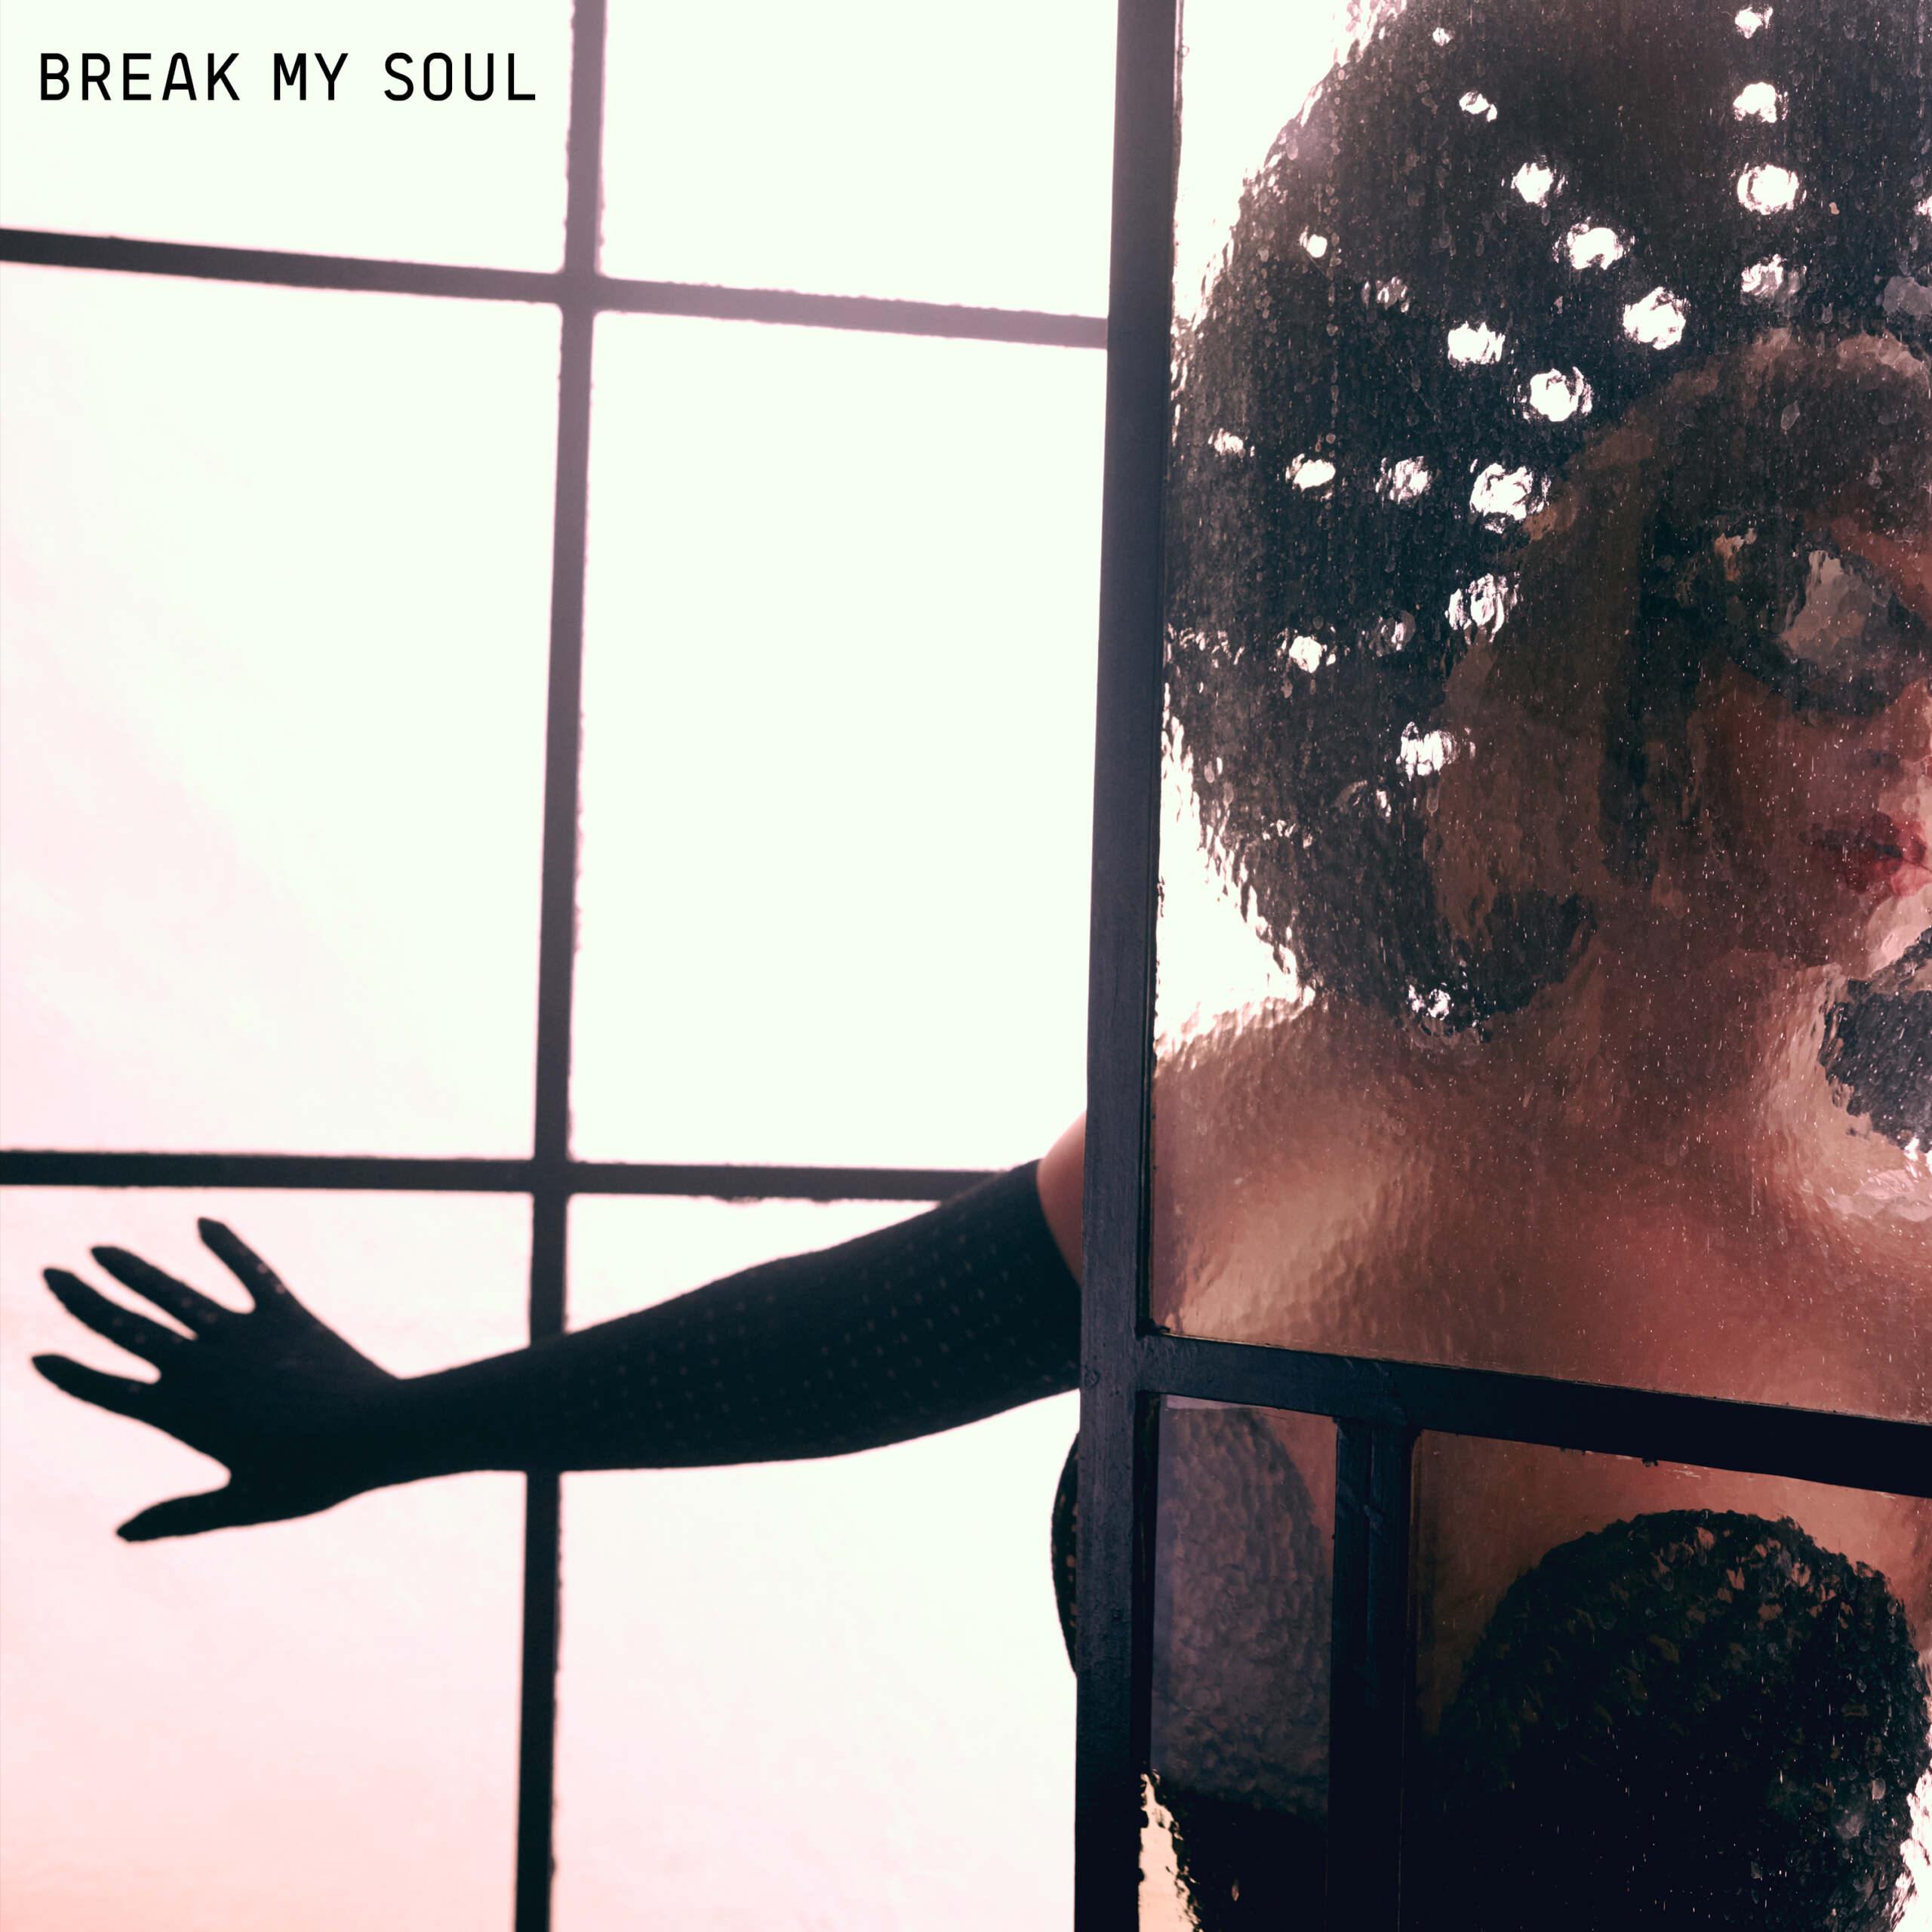 Watch The Lyric Video For Beyoncé's "Break My Soul"